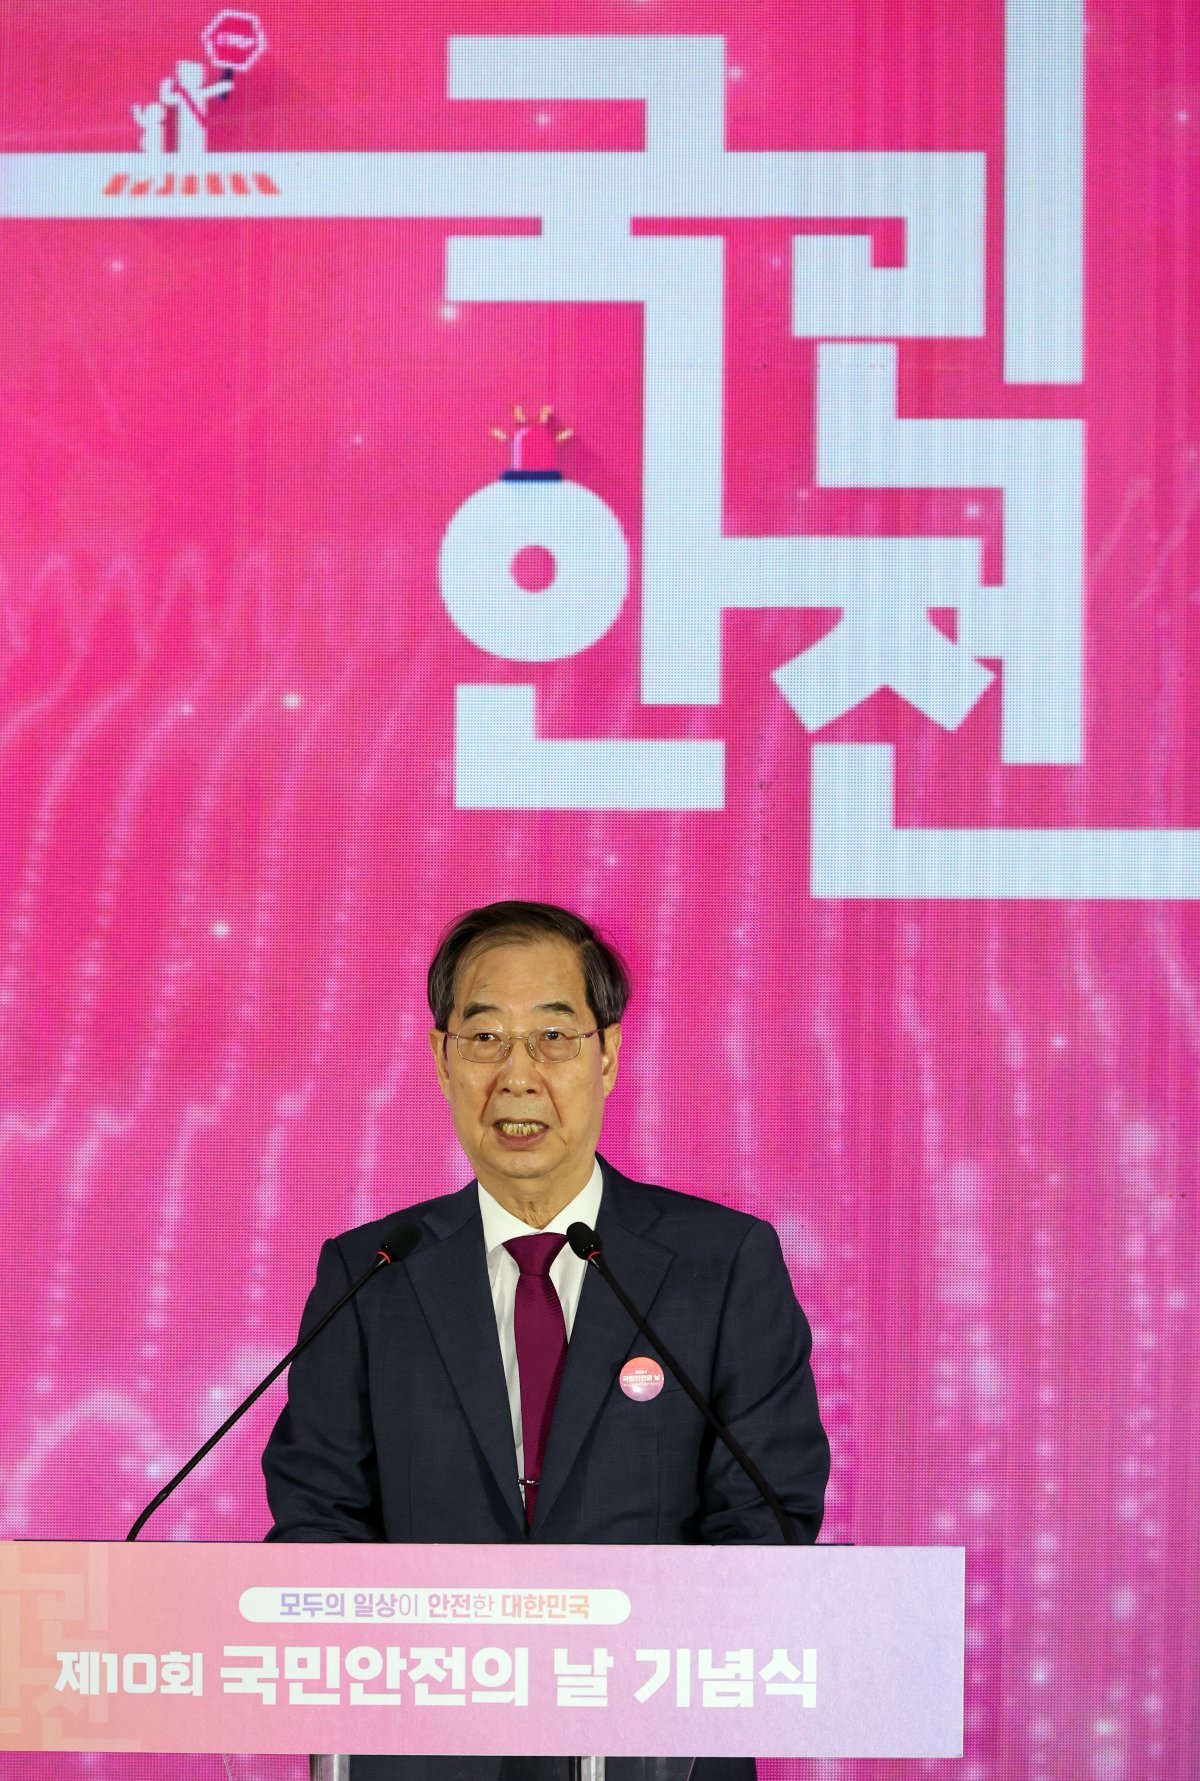 한 총리, 세월호 10주기 “‘모두의 일상이 안전한 대한민국’에 최선”